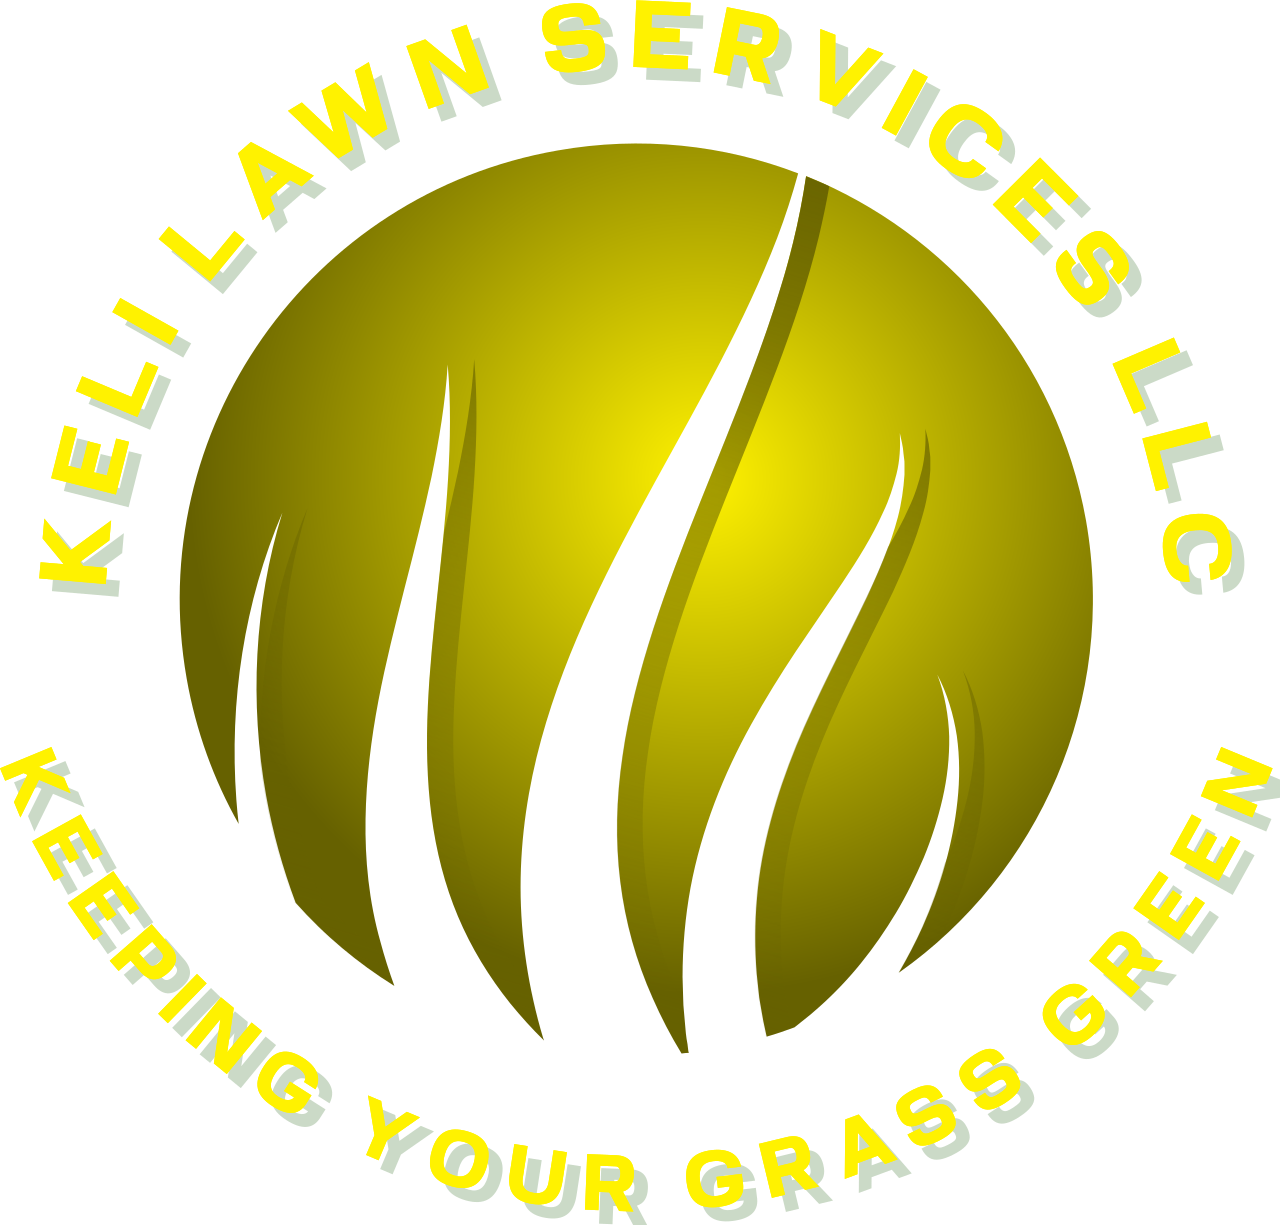 KELI LAWN SERVICES LLC's web page